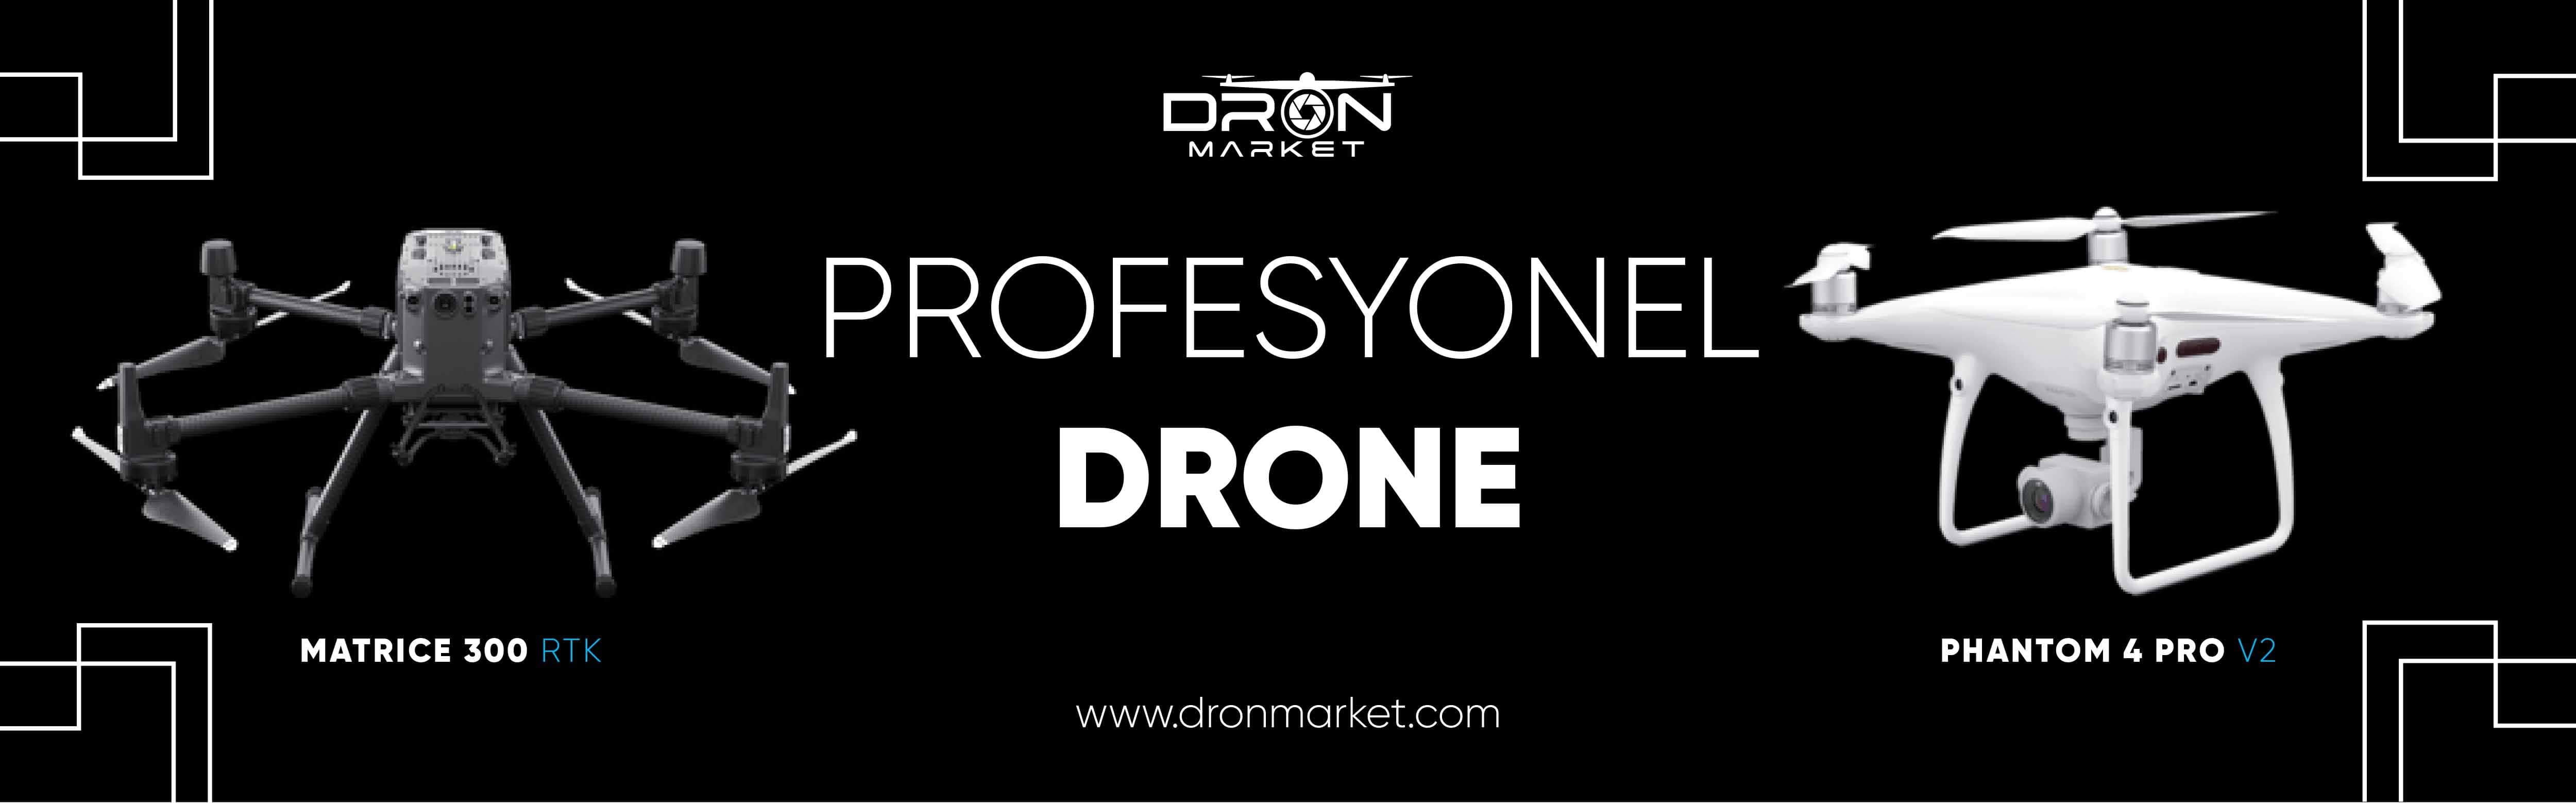 drones professionnels aux meilleurs prix sur dronmarket.com